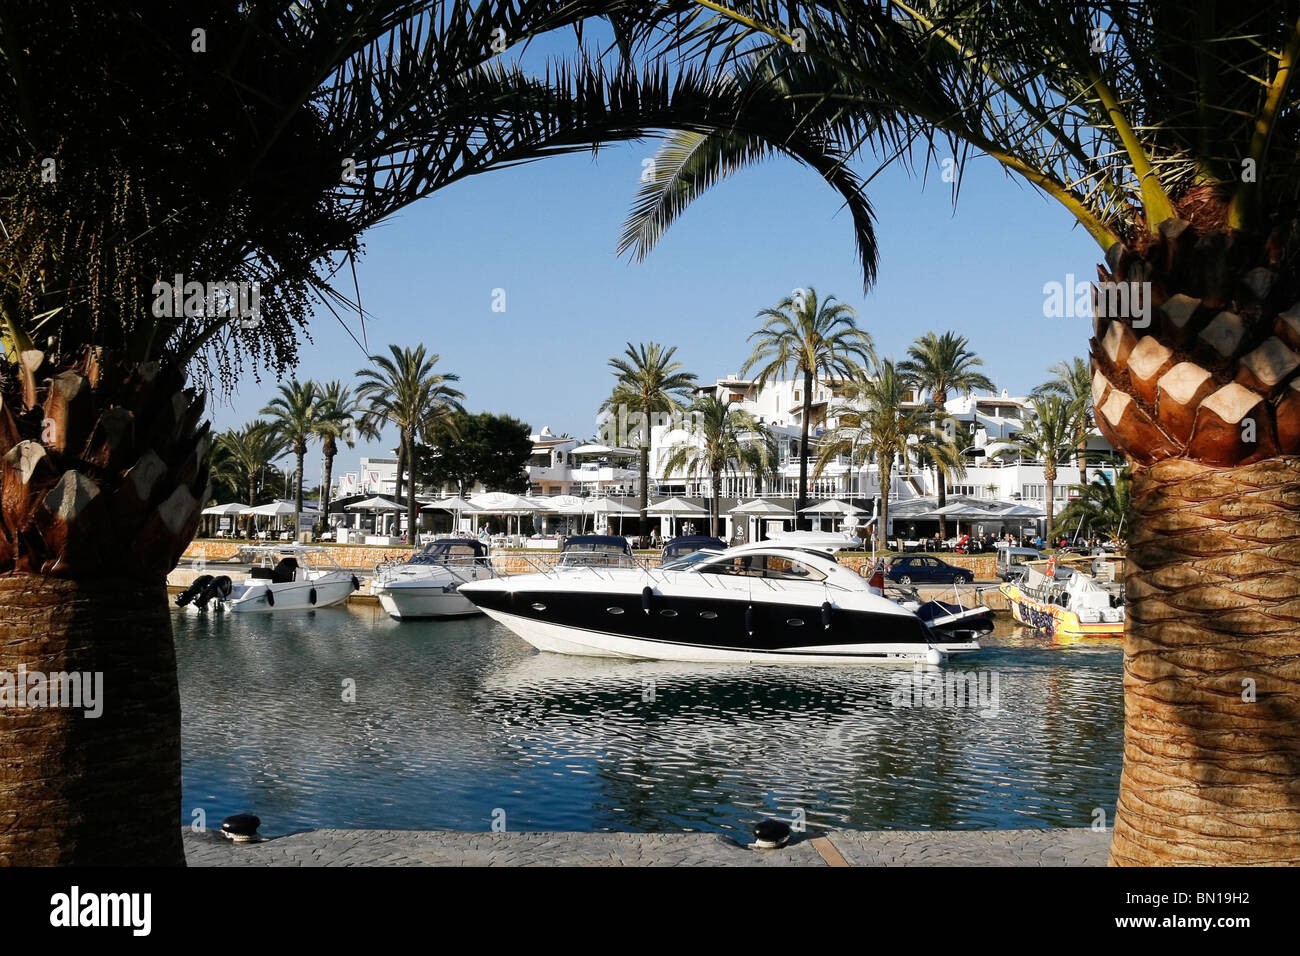 Una vista del puerto deportivo de Cala D'Or, Mallorca Foto de stock